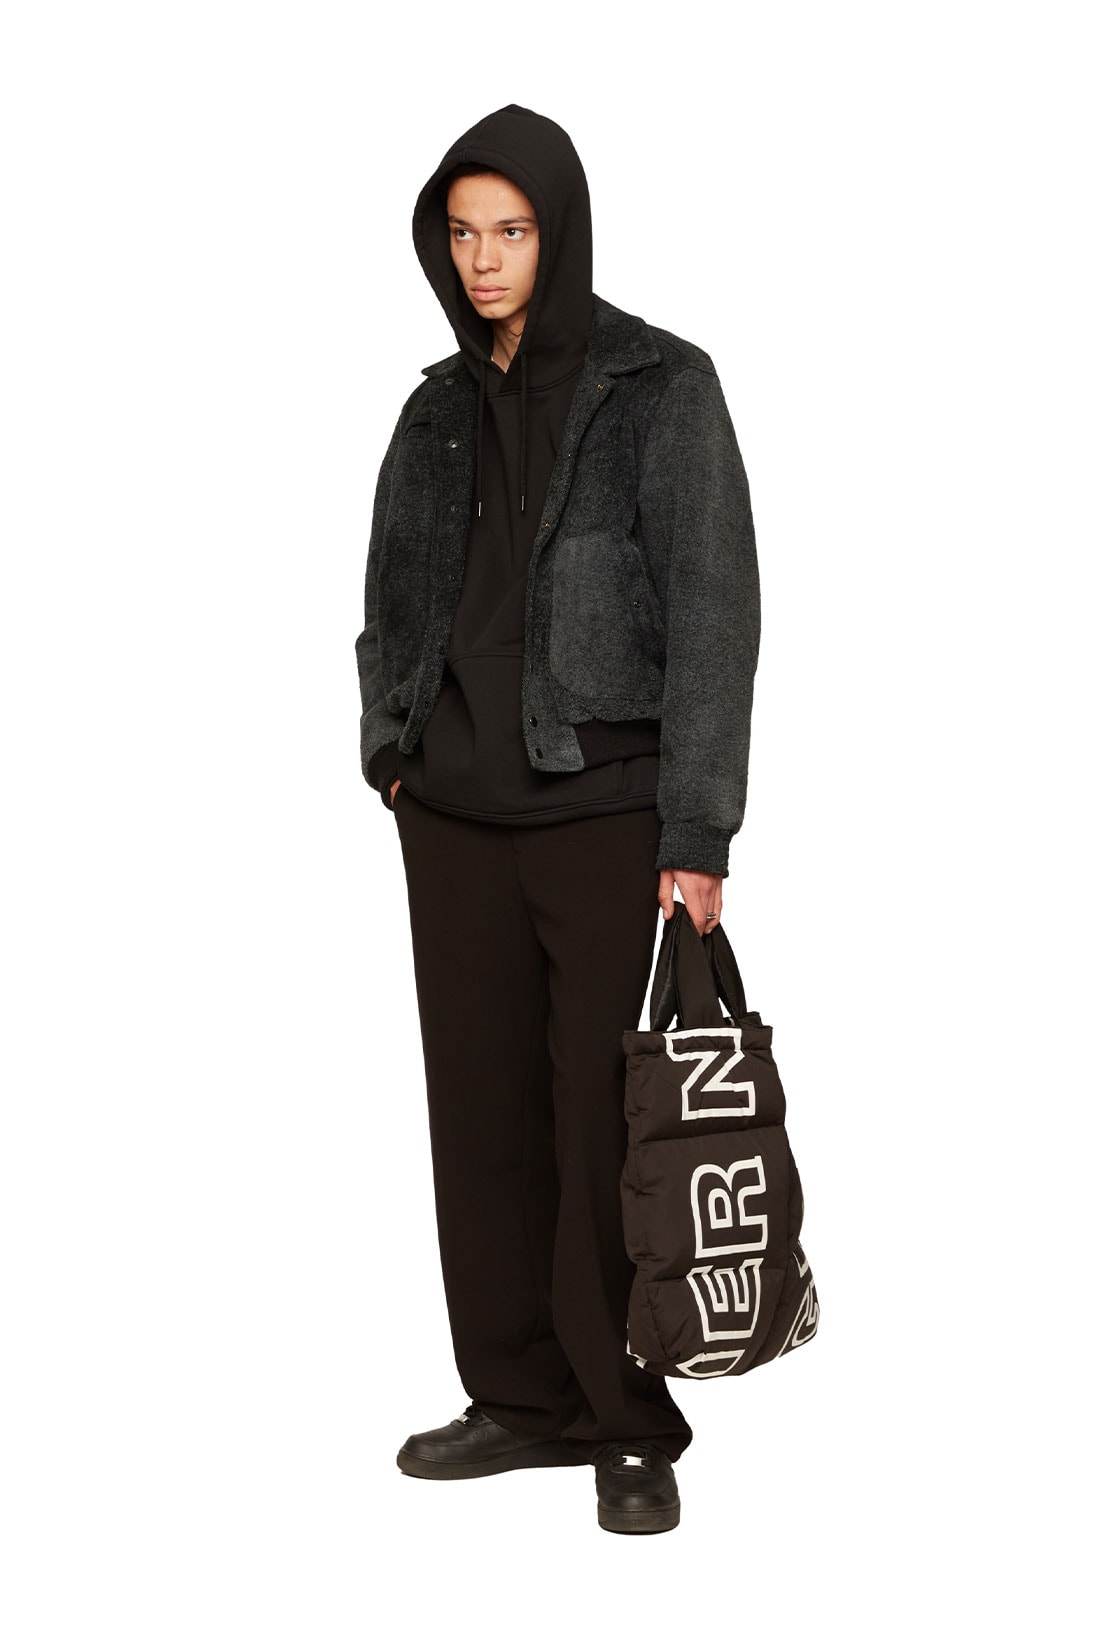 atelier new regime montreal brand fall winter lookbook hoodie jacket